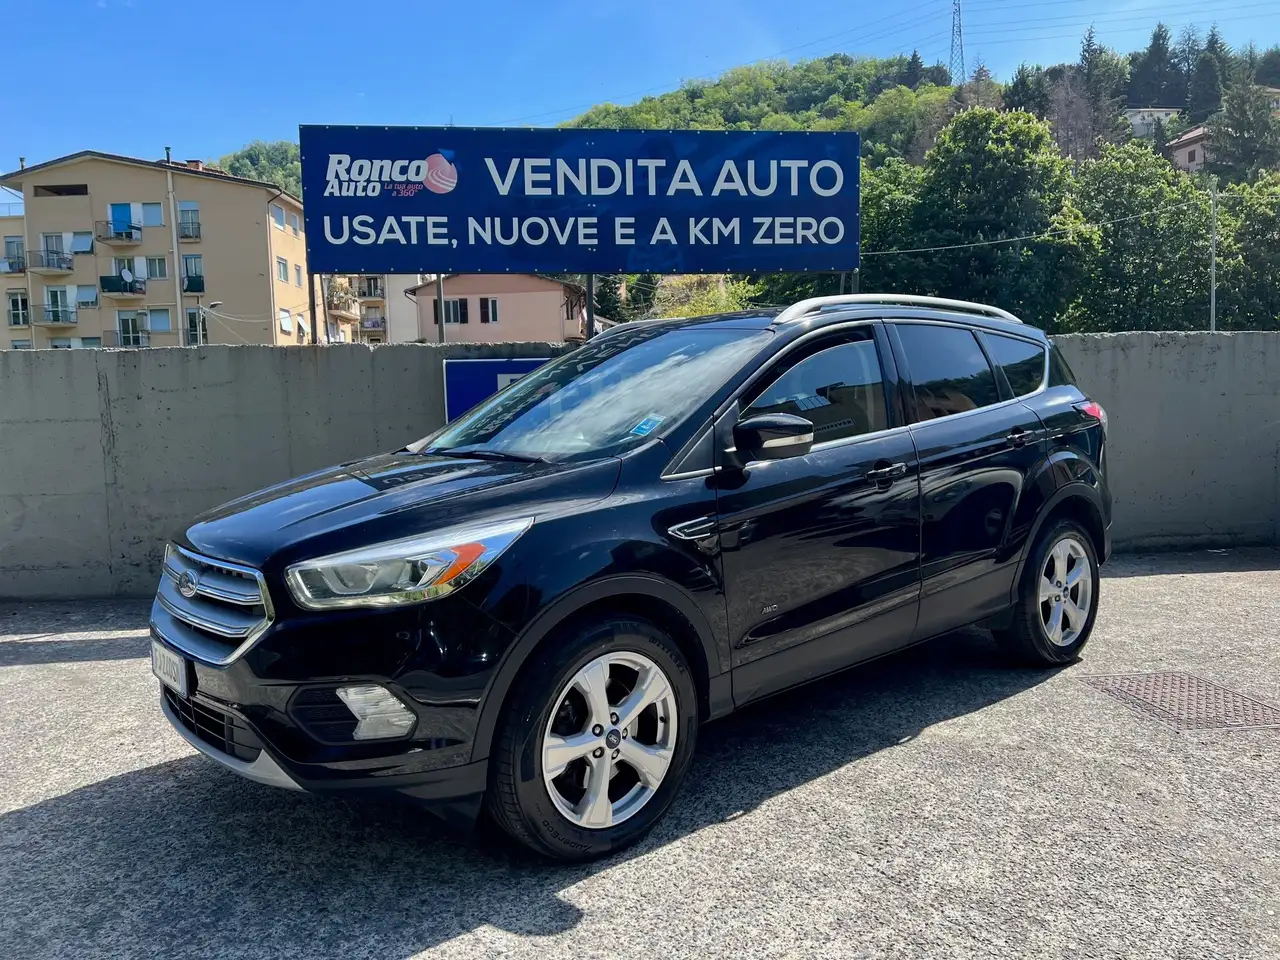 usato Ford Kuga SUV/Fuoristrada/Pick-up a Genova per € 16.900,-